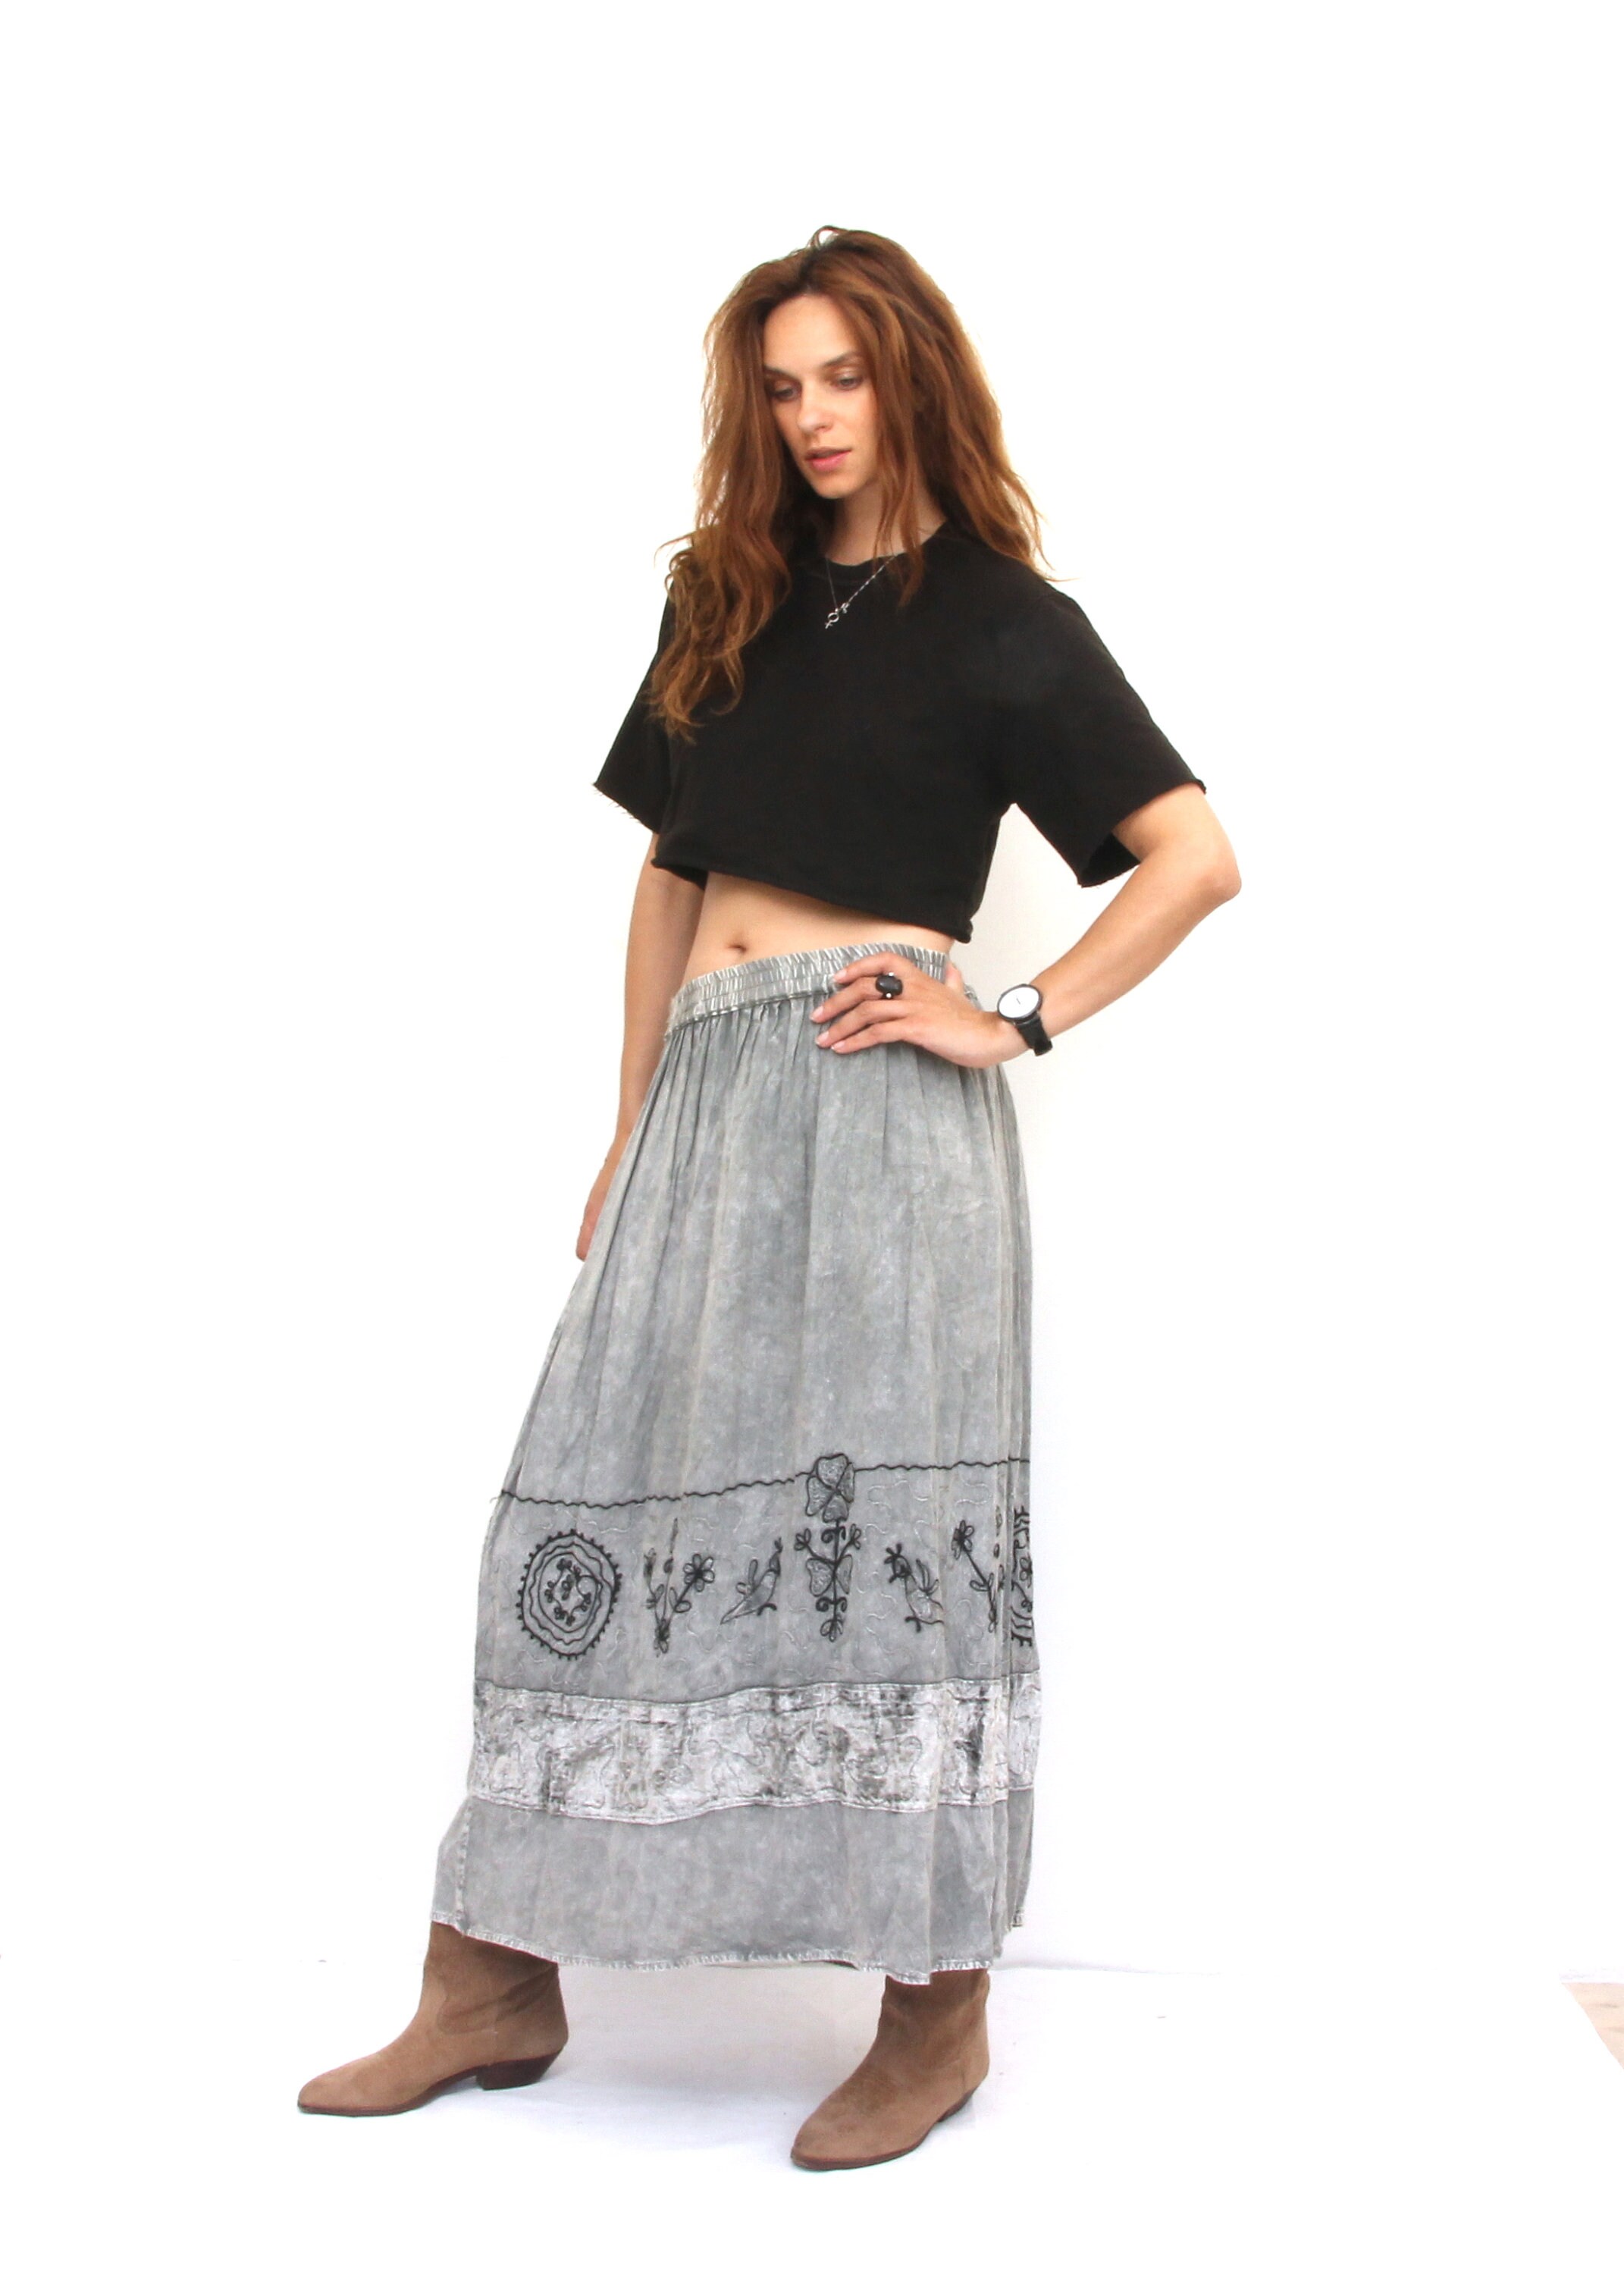 Vintage Tye Dyed Full Skirt Khaki Embroidered Boho Skirt L- 2XL